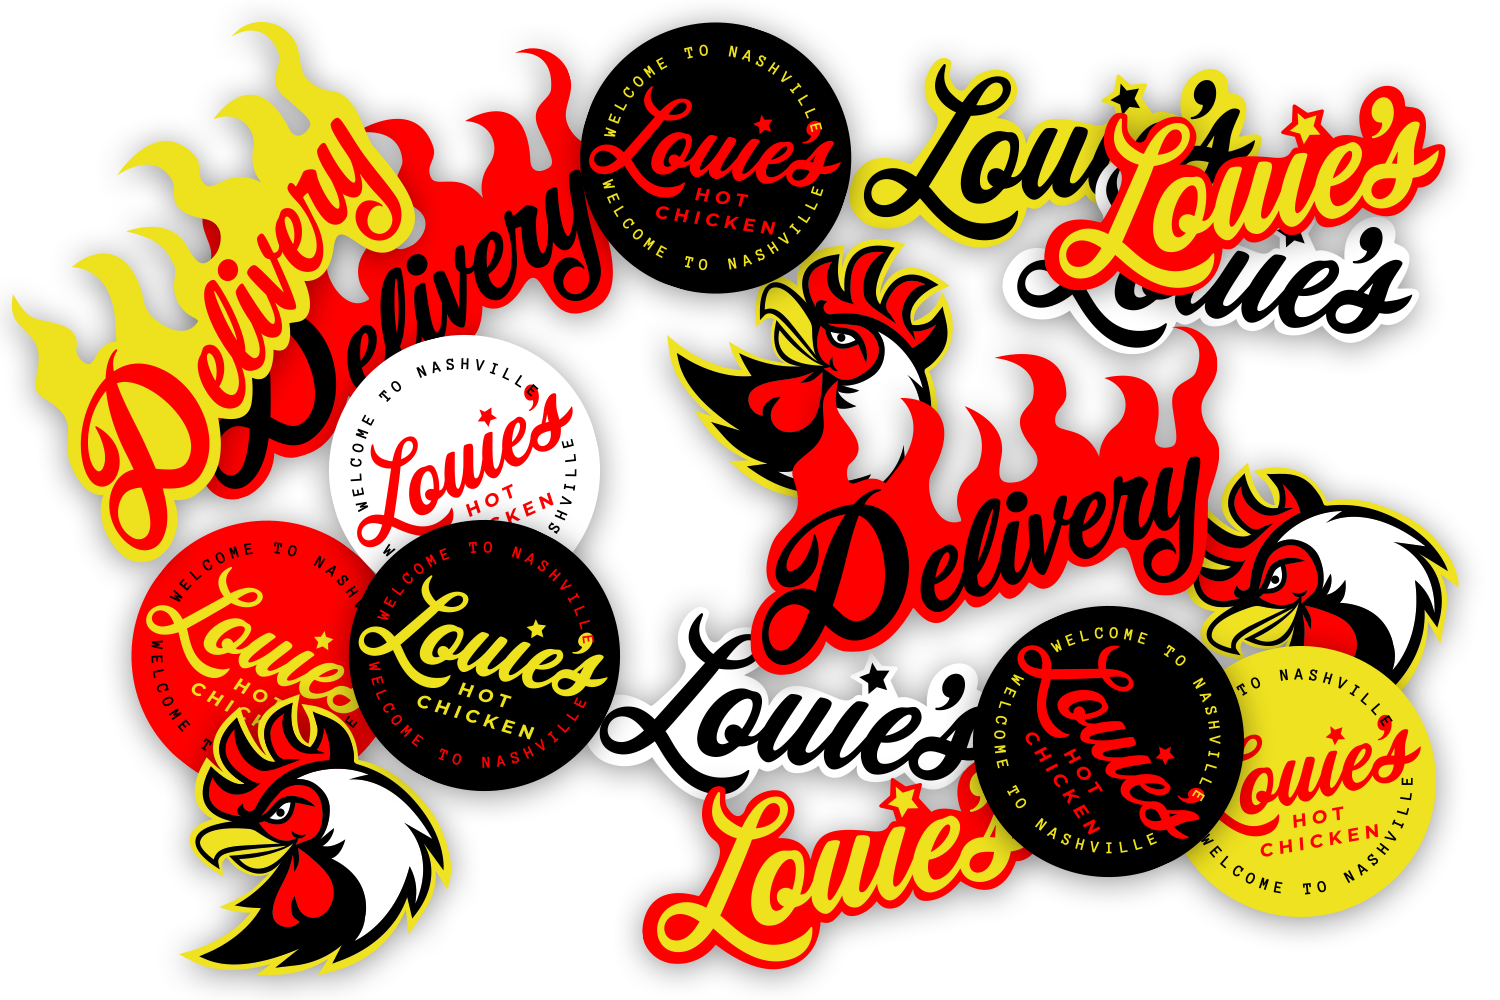 louie's hot chicken, stickers